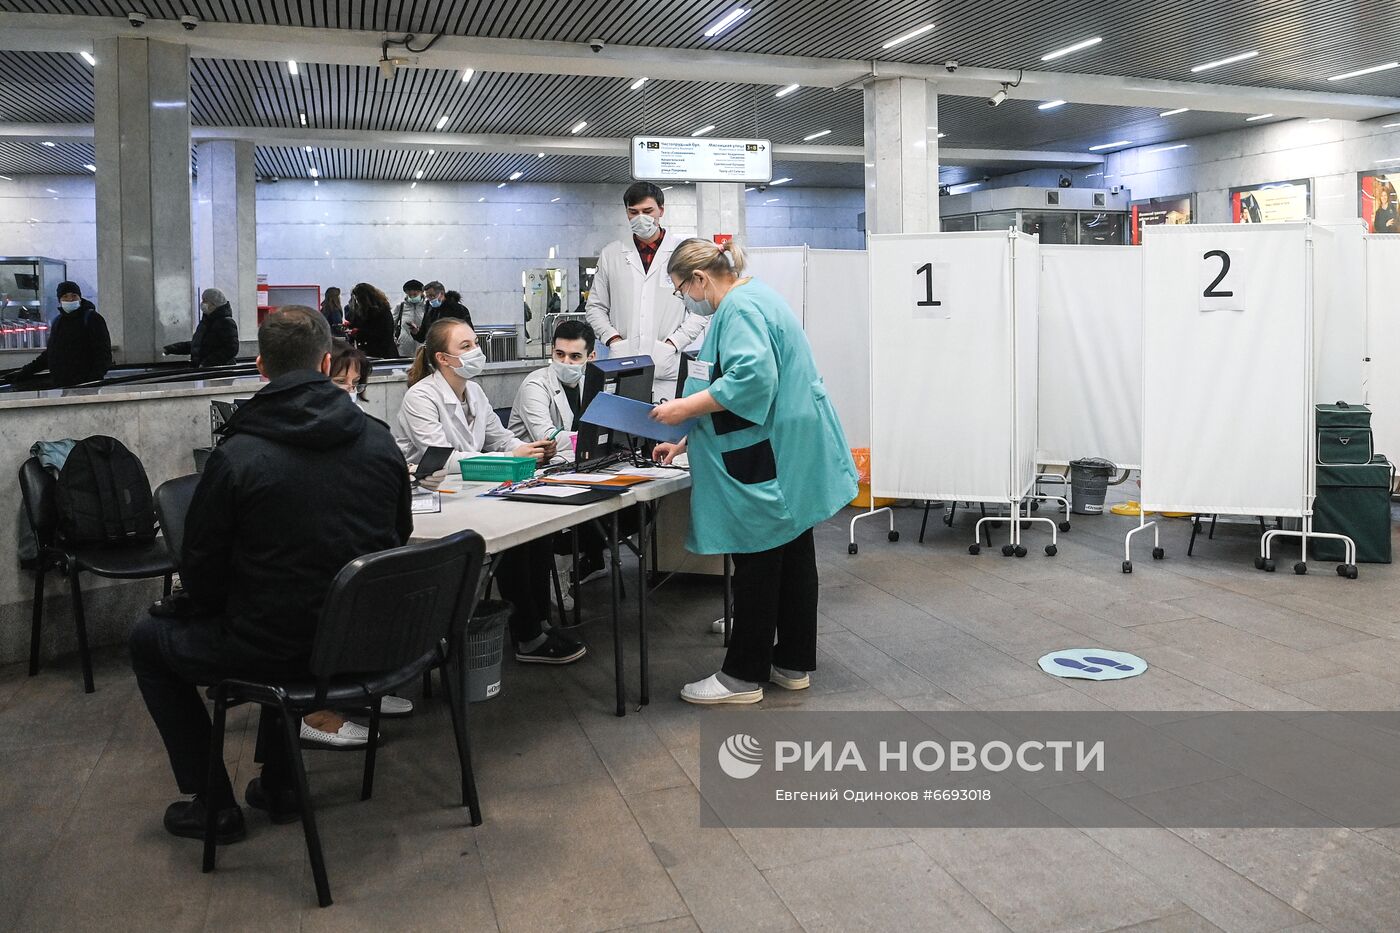 Экспресс-тестирование на COVID-19 в московском метро